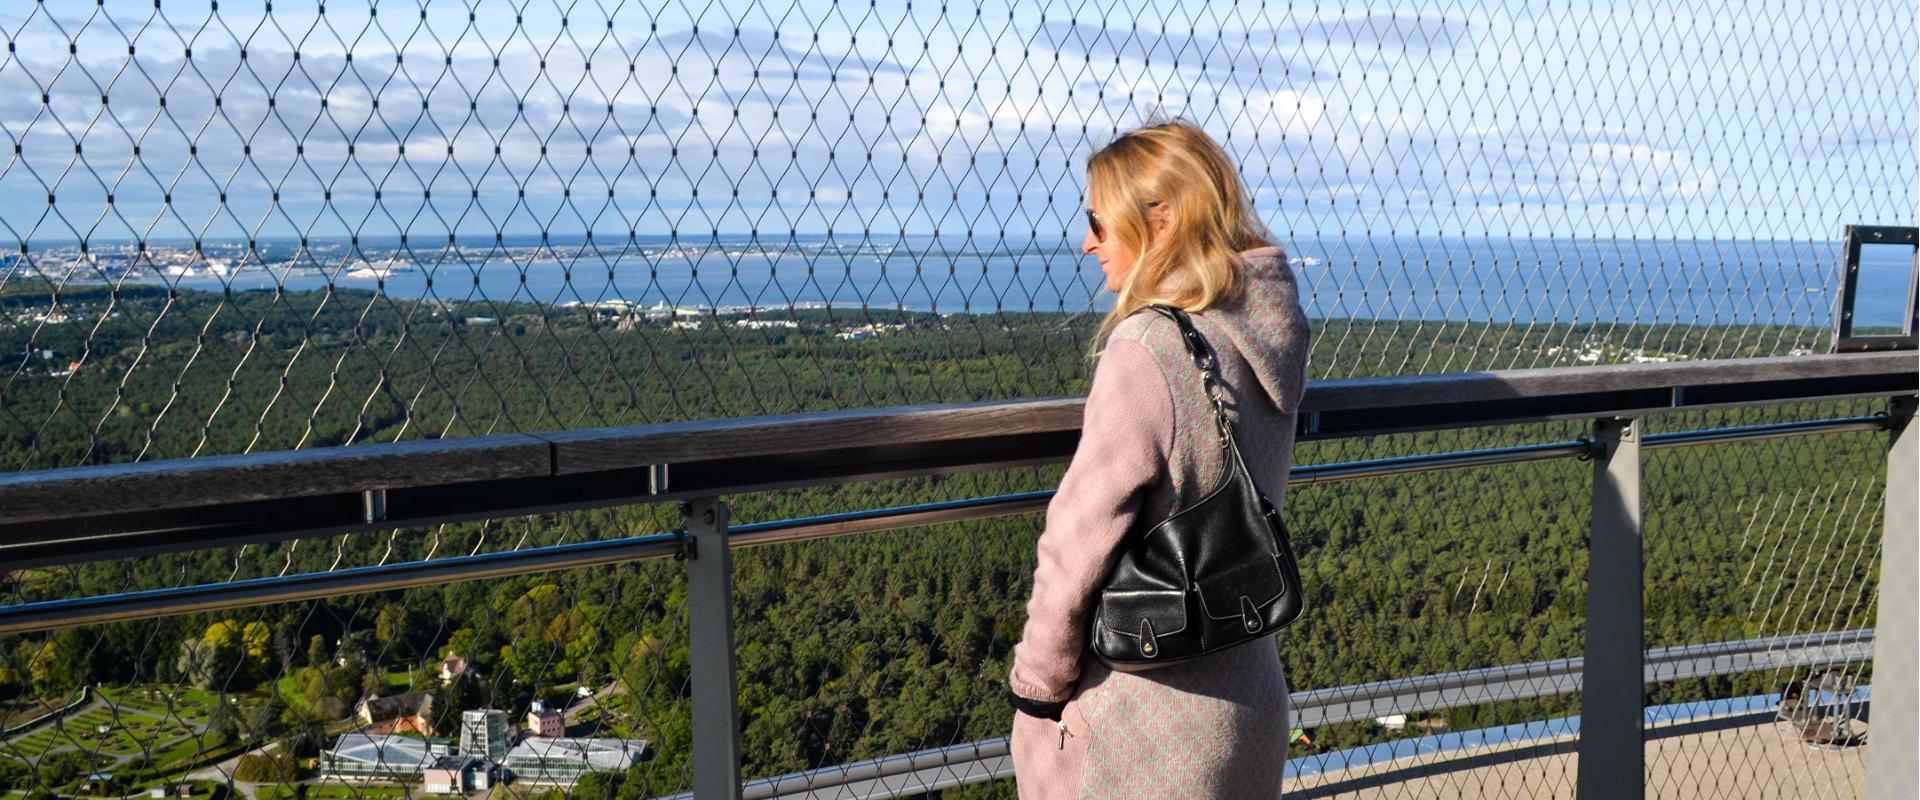 Estland in der Sowjetzeit – Exkursion in Tallinn und Umgebung